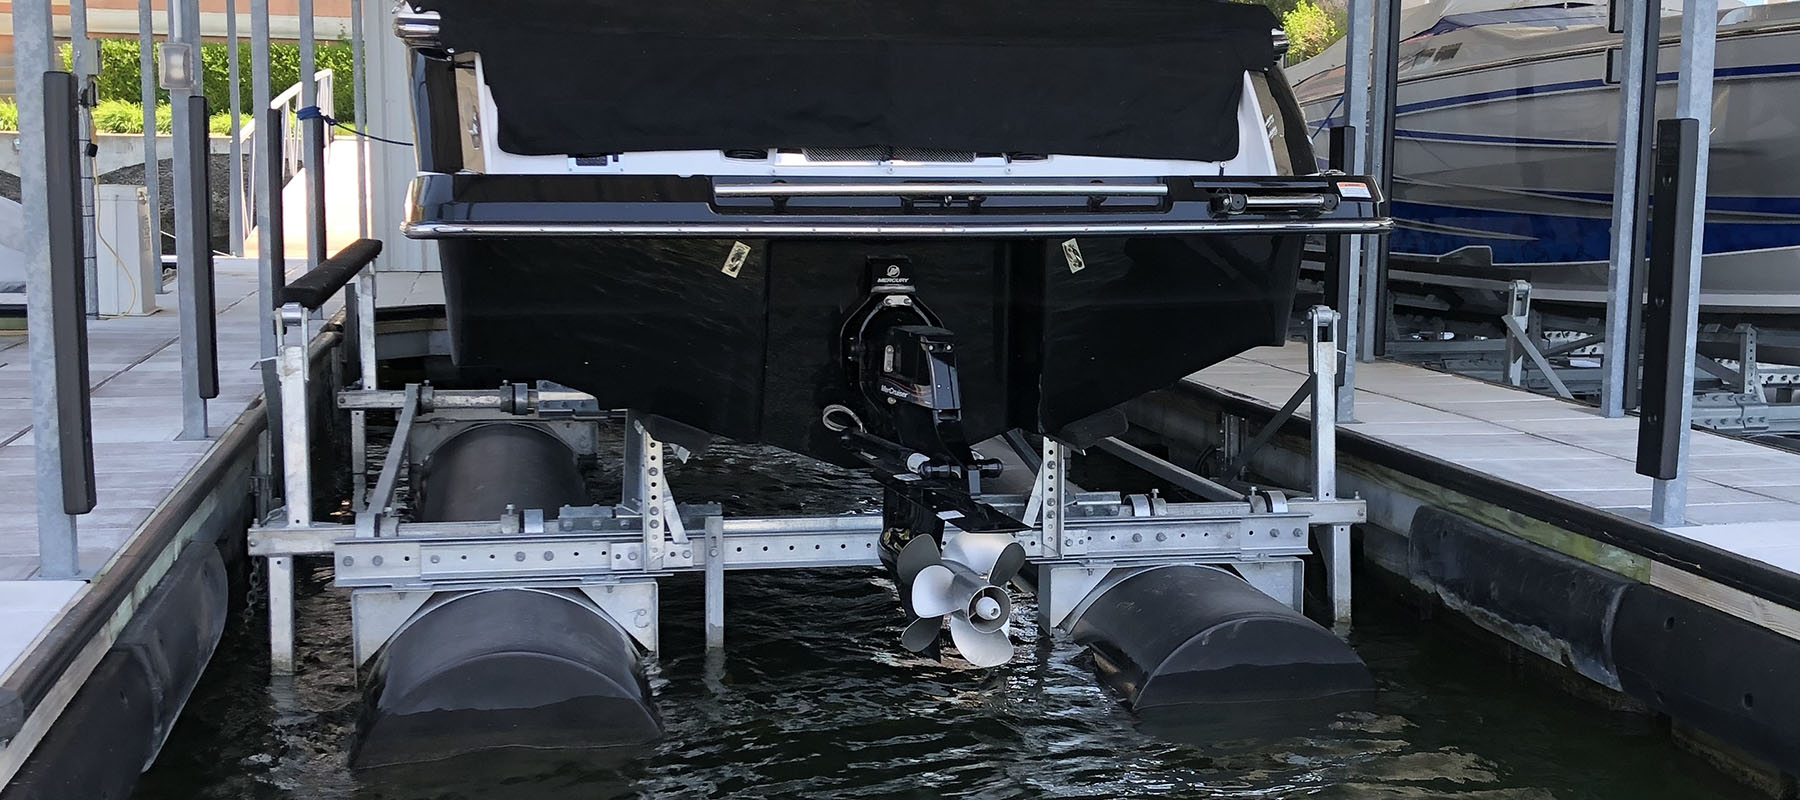 8,000 lb boat lift at the Lake of the Ozarks